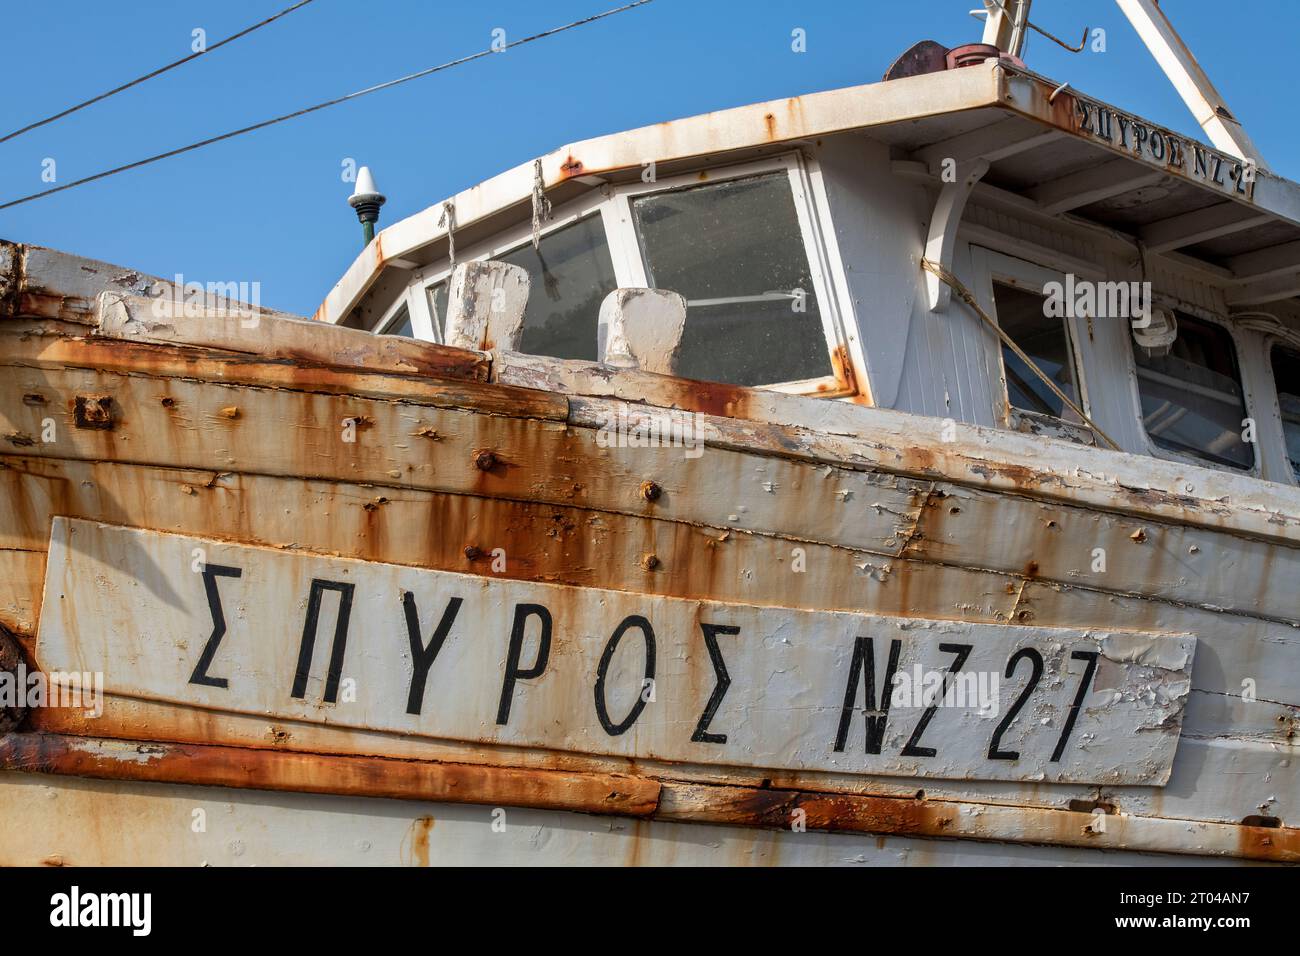 Alte, stillgelegte griechische Holzfischerei-Trawler oder Boot auf dem harten Stand im Yachthafen von zante oder zakynthos Stadt in griechenland Stockfoto